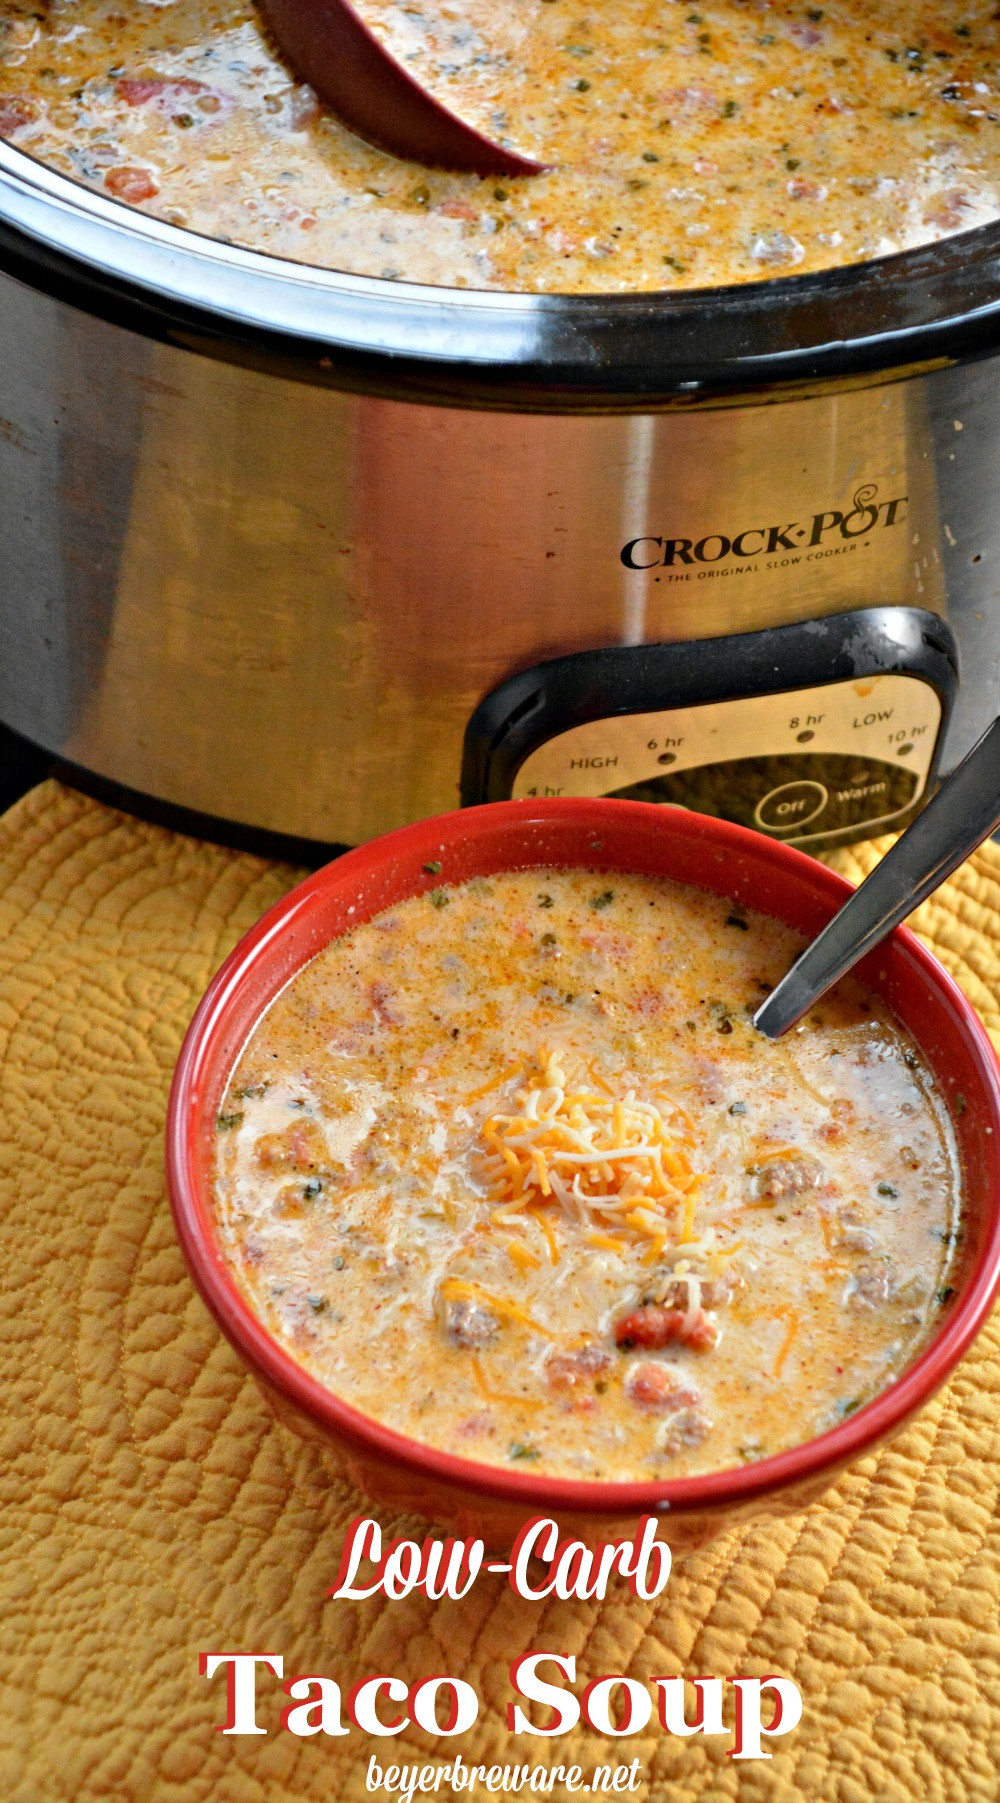 Crockpot Keto Recipes Low Carb Crock Pot
 Crock Pot Low Carb Taco Soup Beyer Beware